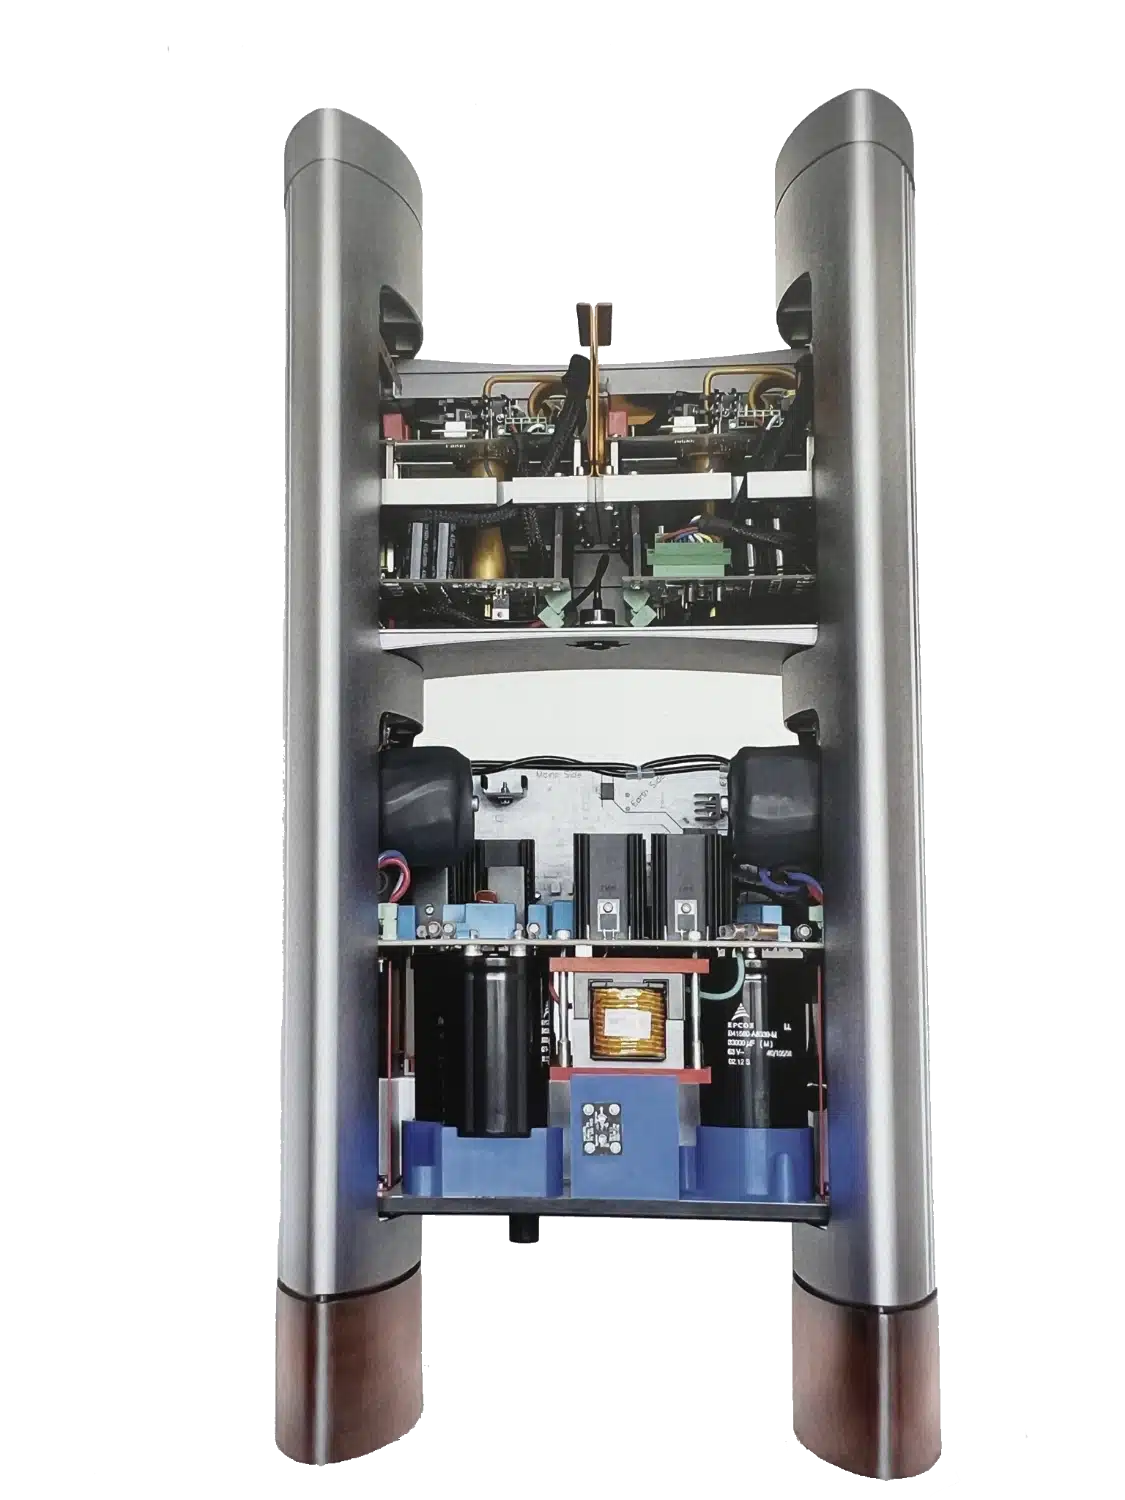 Vue en coupe d'un amplificateur Halcro Eclipse avec ses composants internes visibles, notamment des condensateurs, des transistors, une alimentation et du câblage, logés entre deux pieds métalliques verticaux (par 1877.audio)